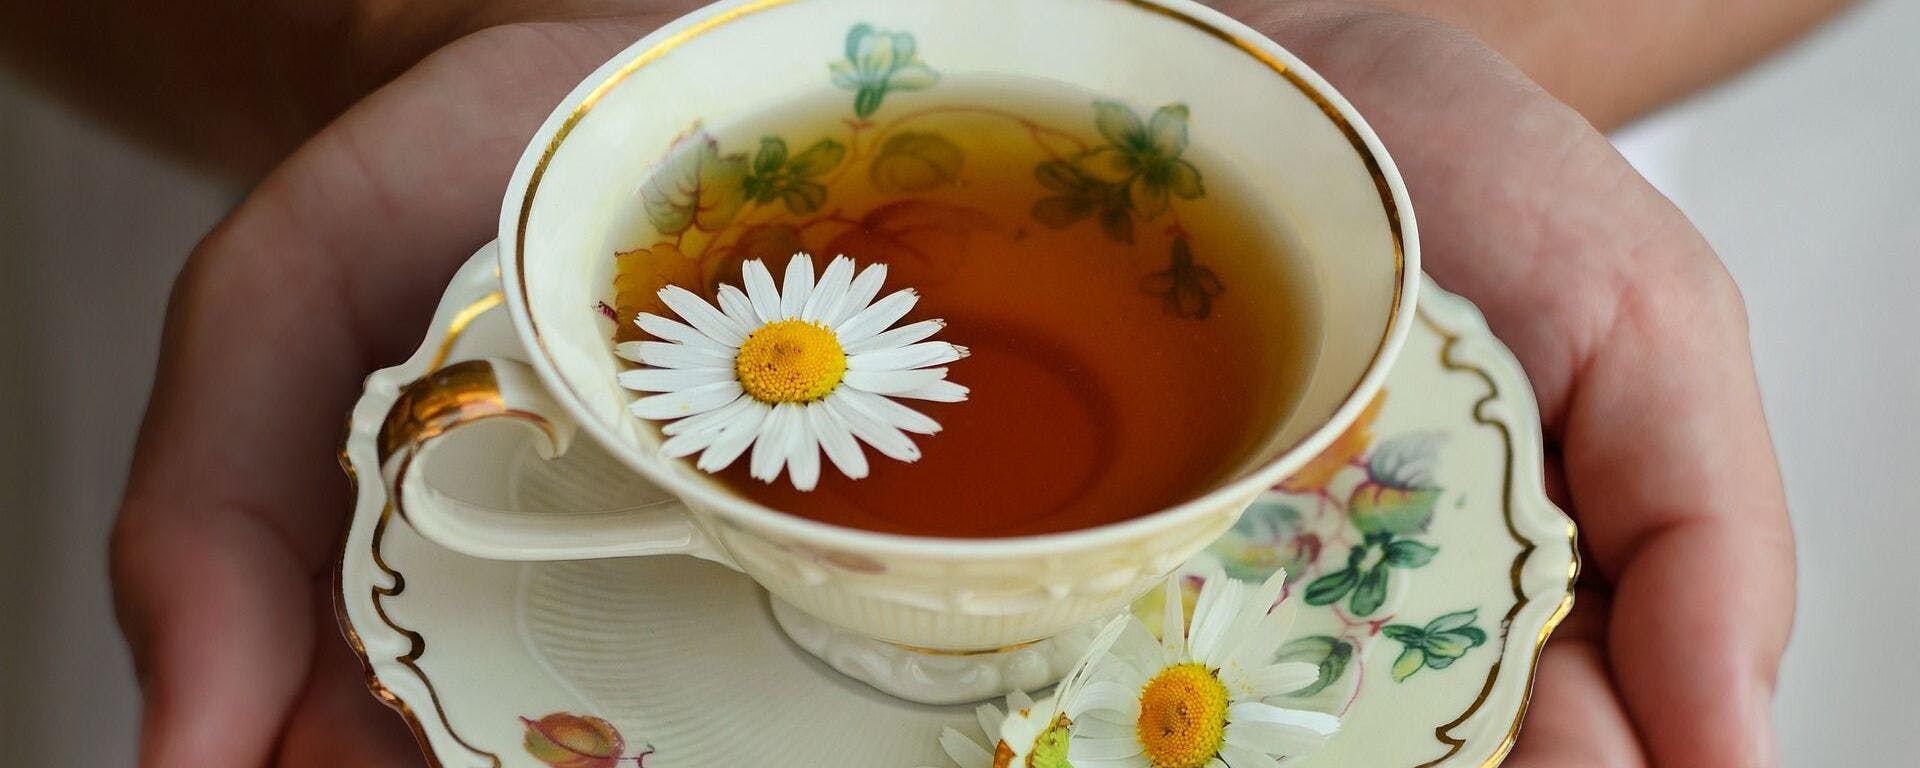 تناول شاي «البابونج» قبل النوم بـ45 دقيقة وتخلص من الأرق مثل صلاح